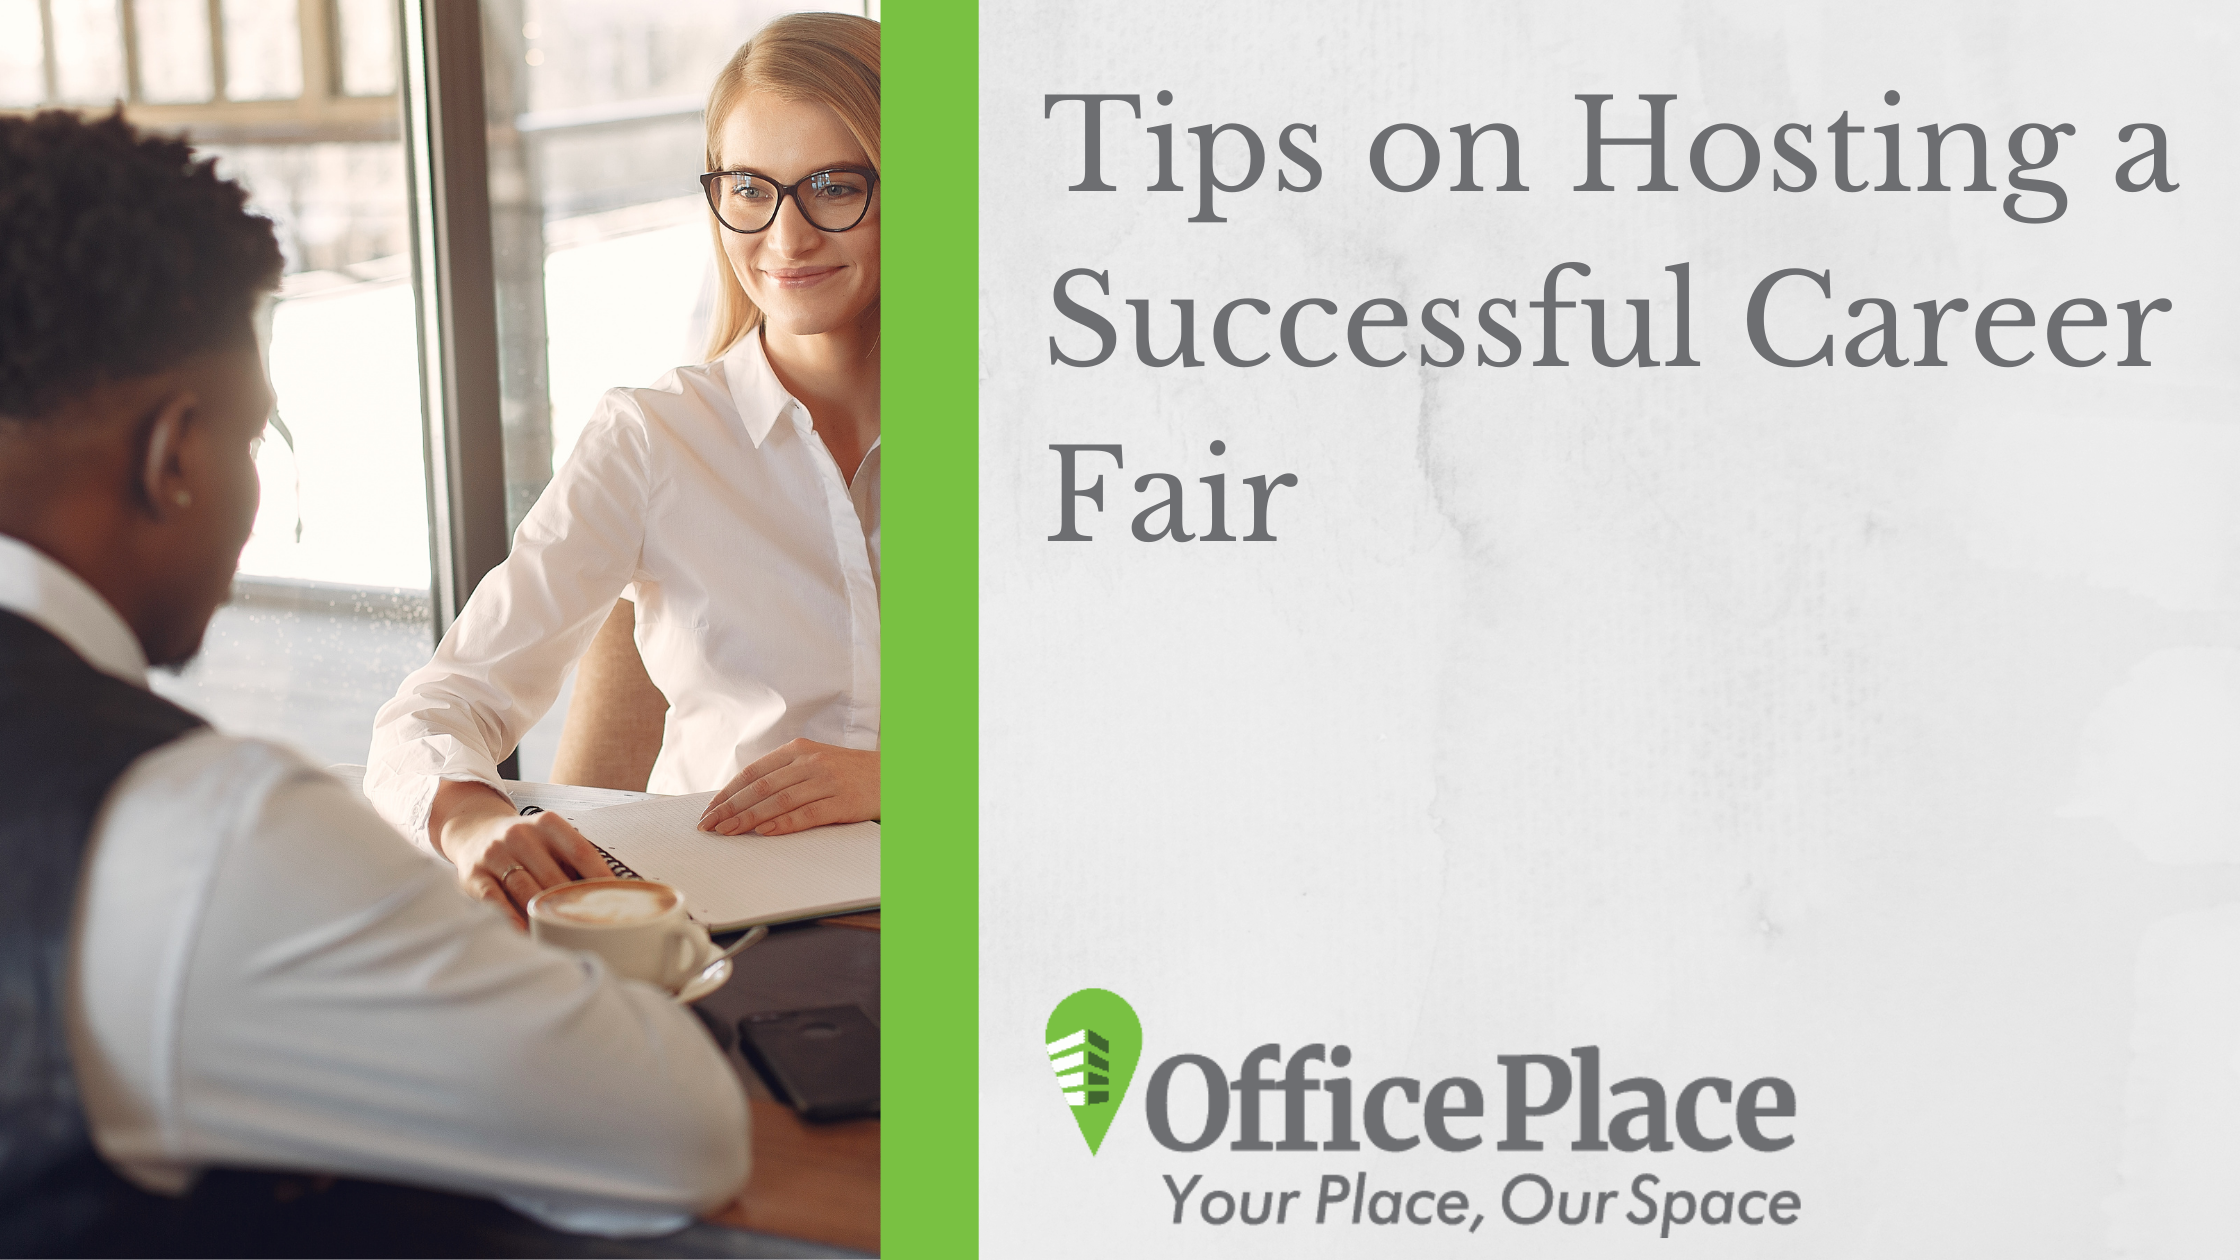 Tips on Hosting a Successful Career Fair